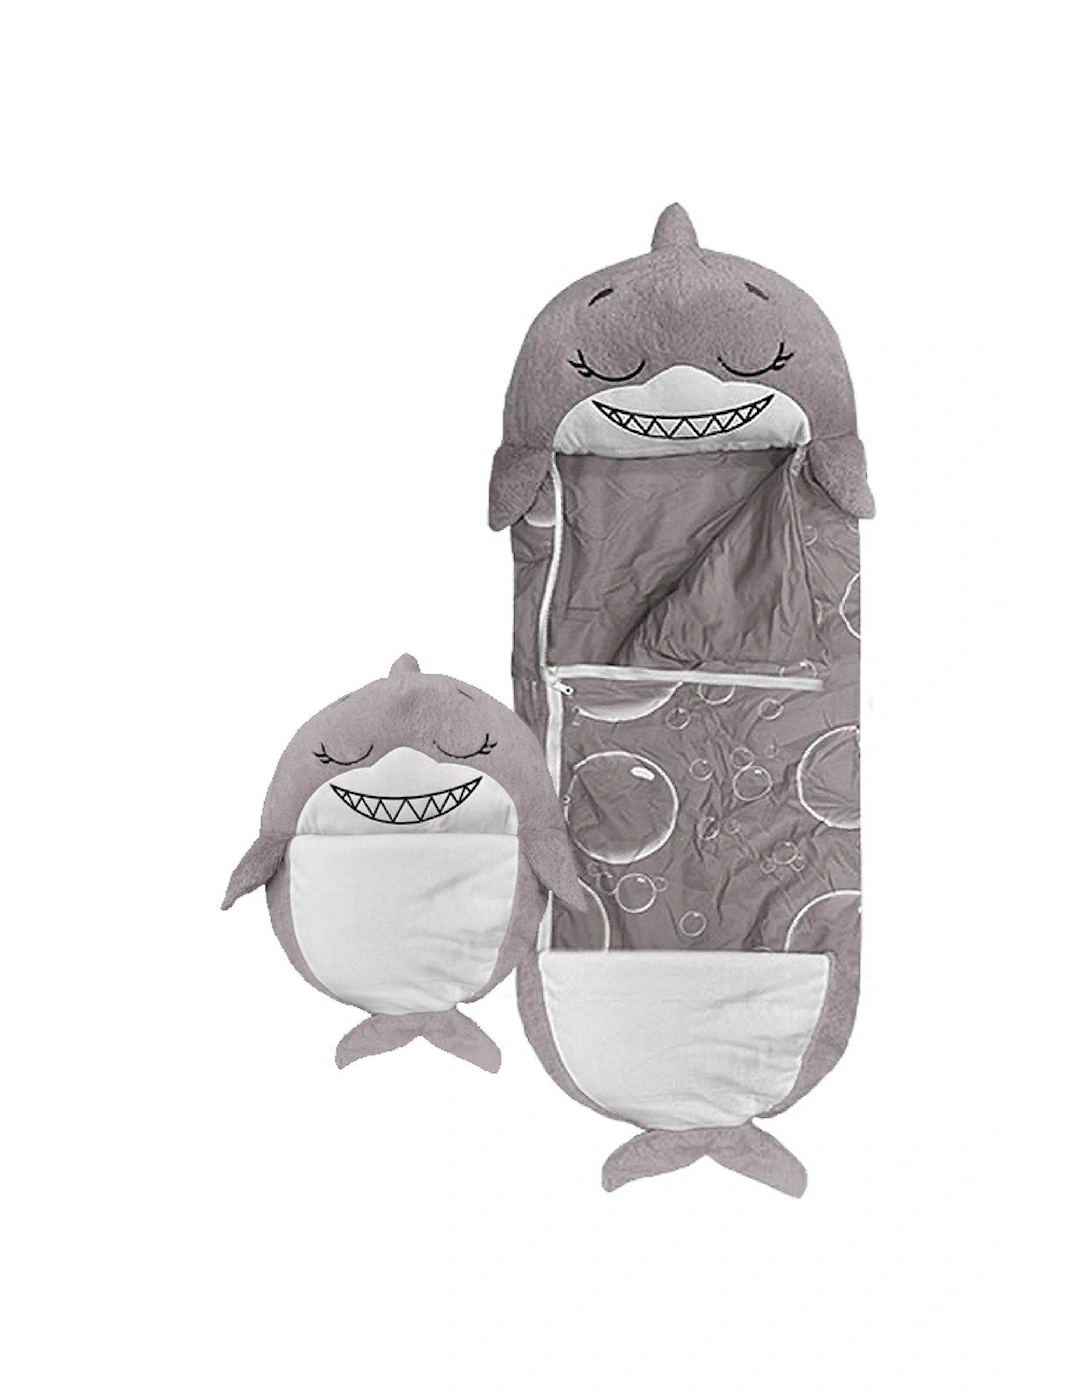 Grey Shark Sleeping Bag - Medium, 3 of 2